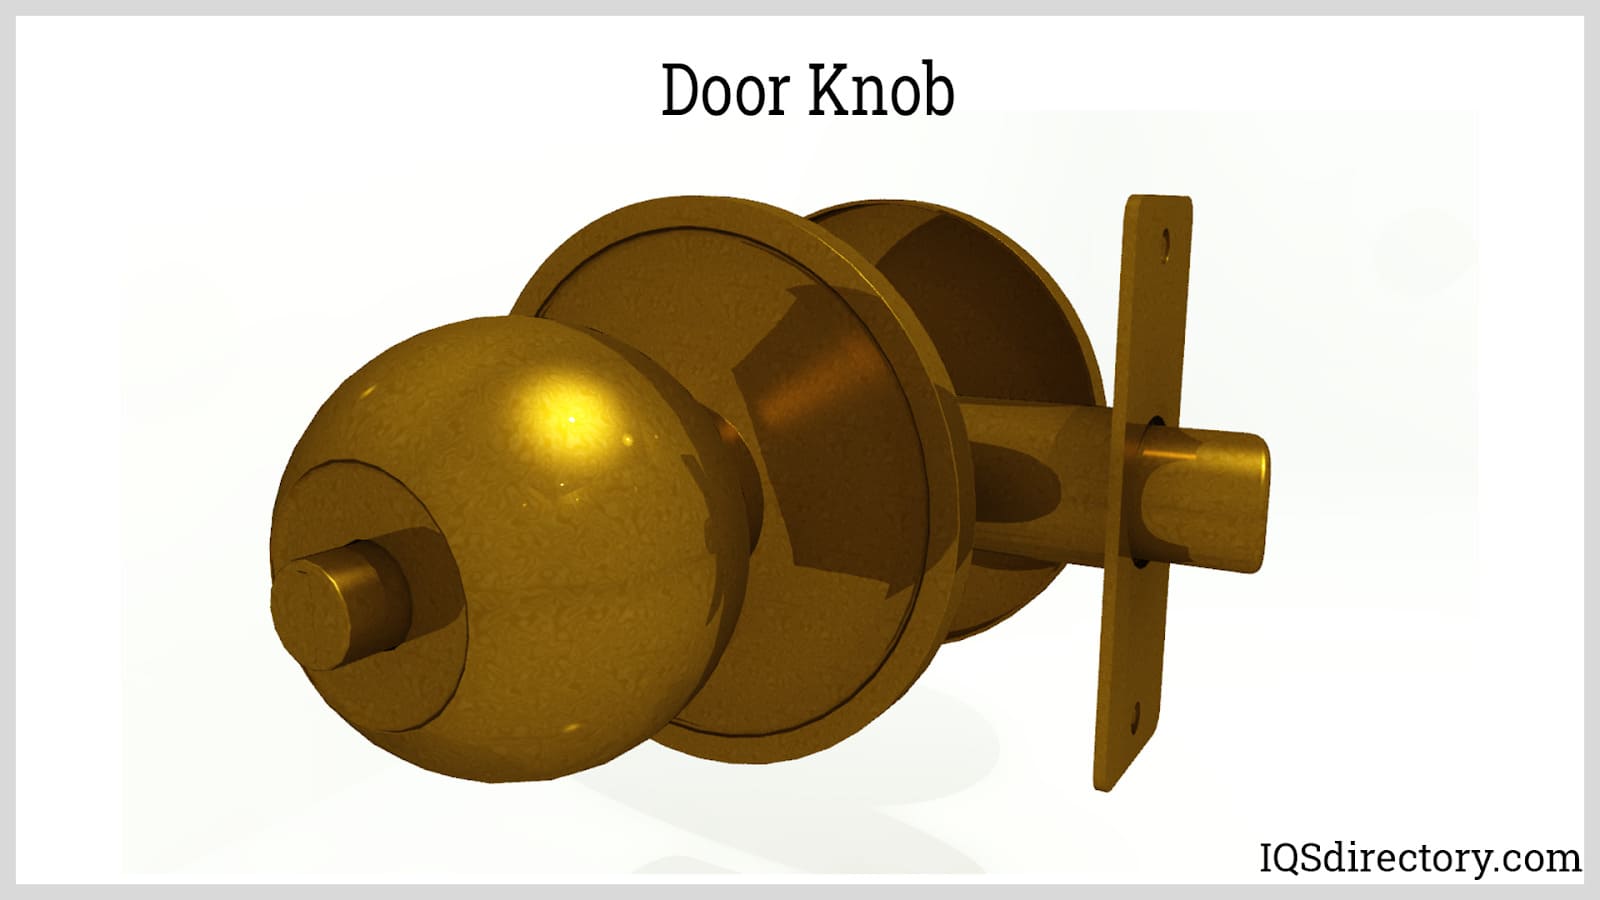 Security Raids Lockable Security Raids Door Lock Fastener Buckle Device Cabinet  Lock With Key For Doors Wooden Box Garage Door